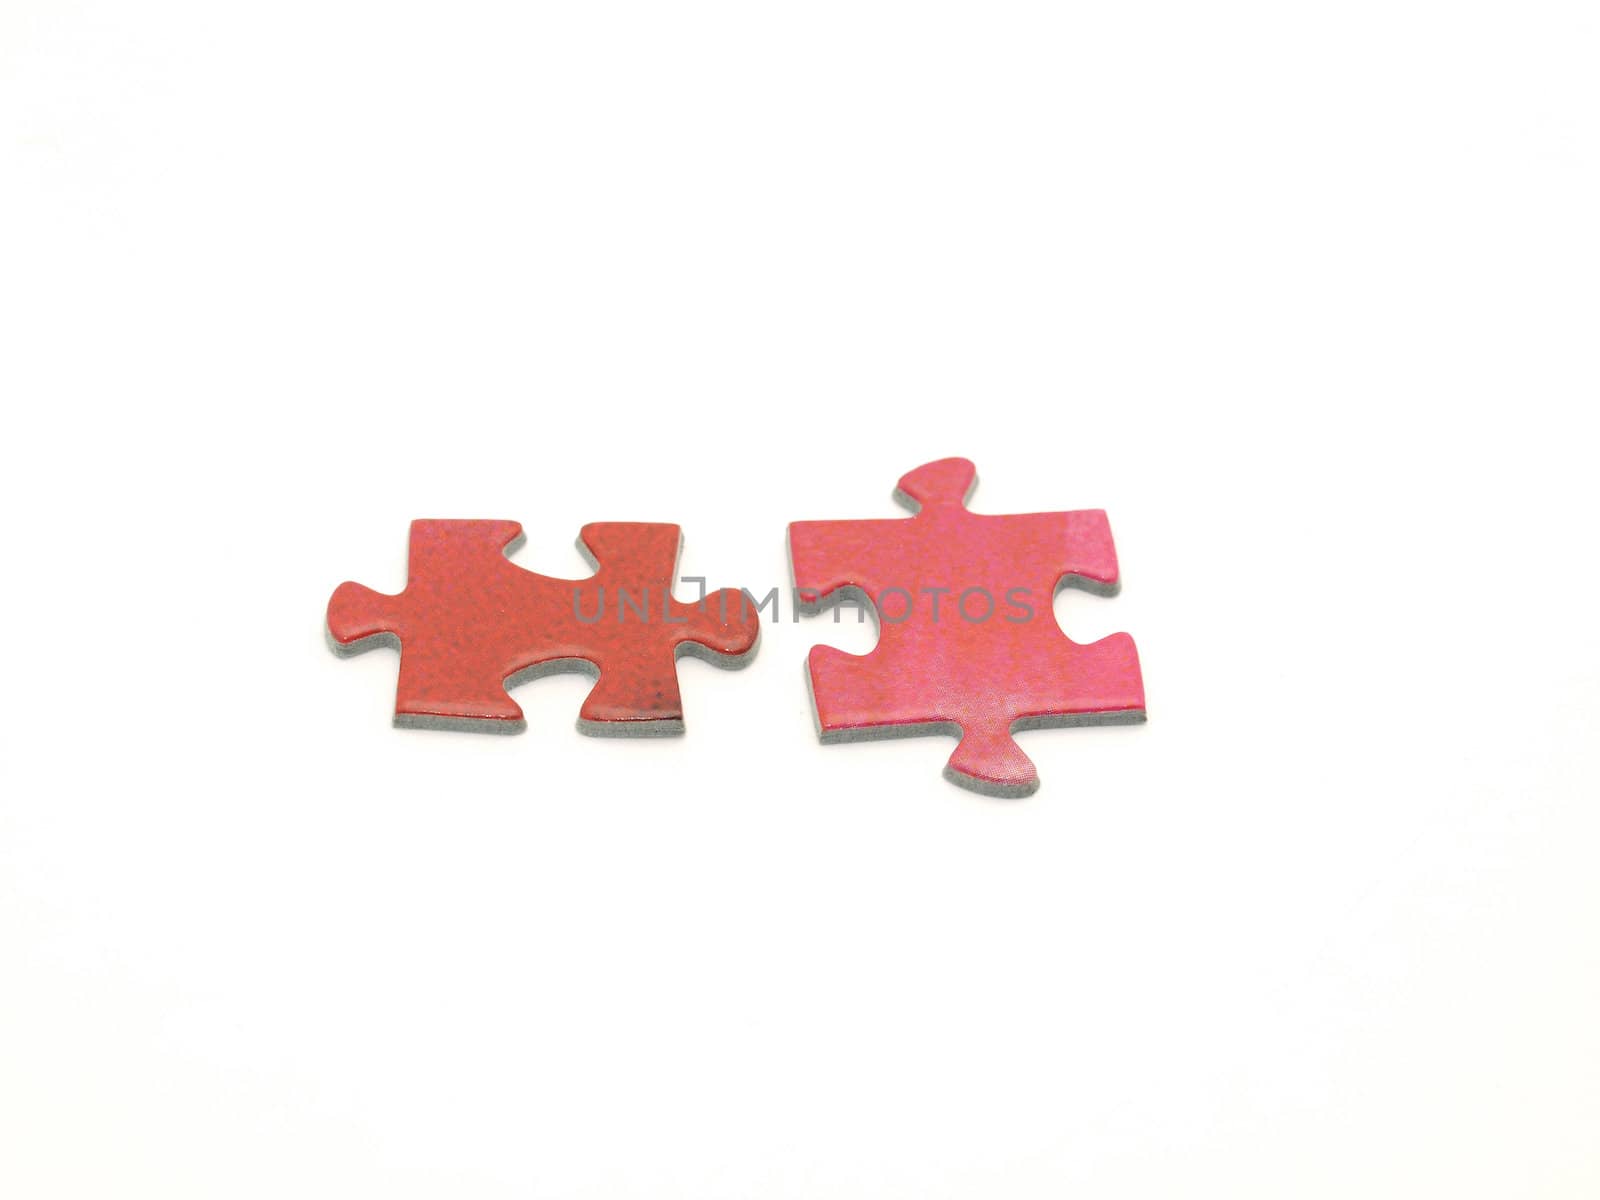 Puzzle pieces by Enskanto